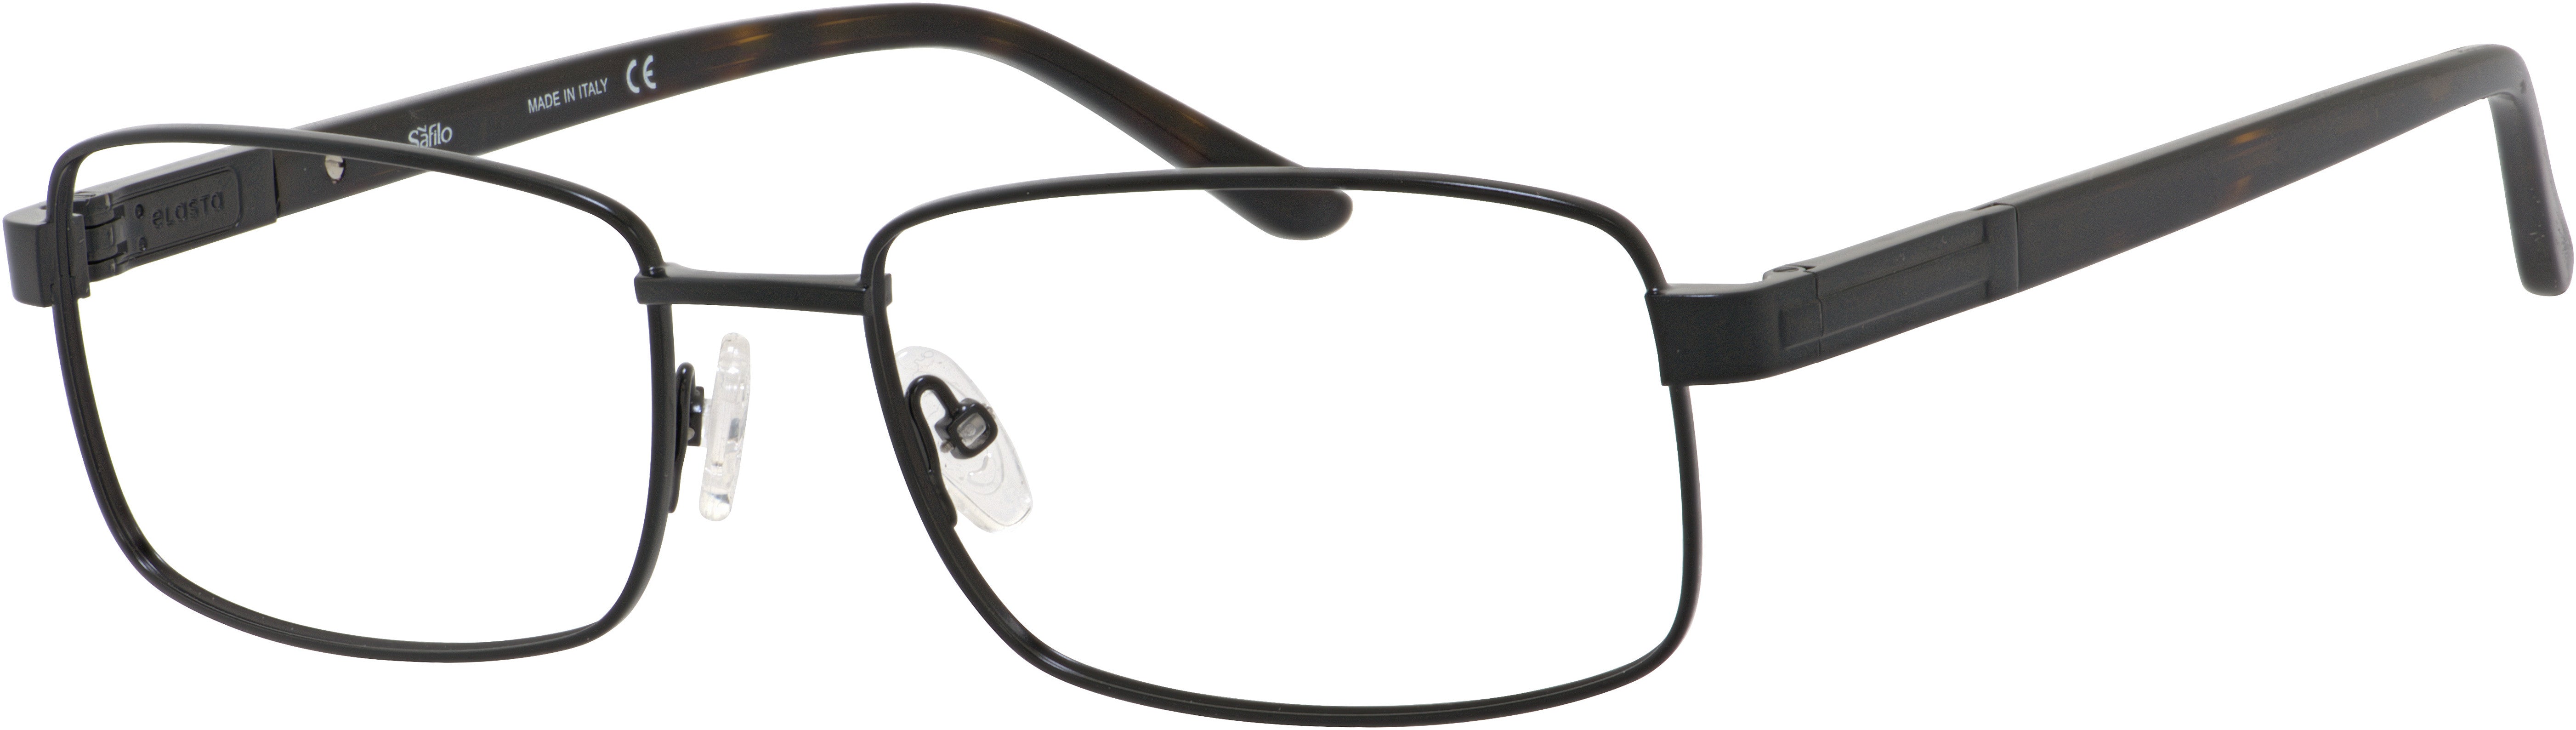  Elasta 3118 Rectangular Eyeglasses 0003-0003  Matte Black (00 Demo Lens)